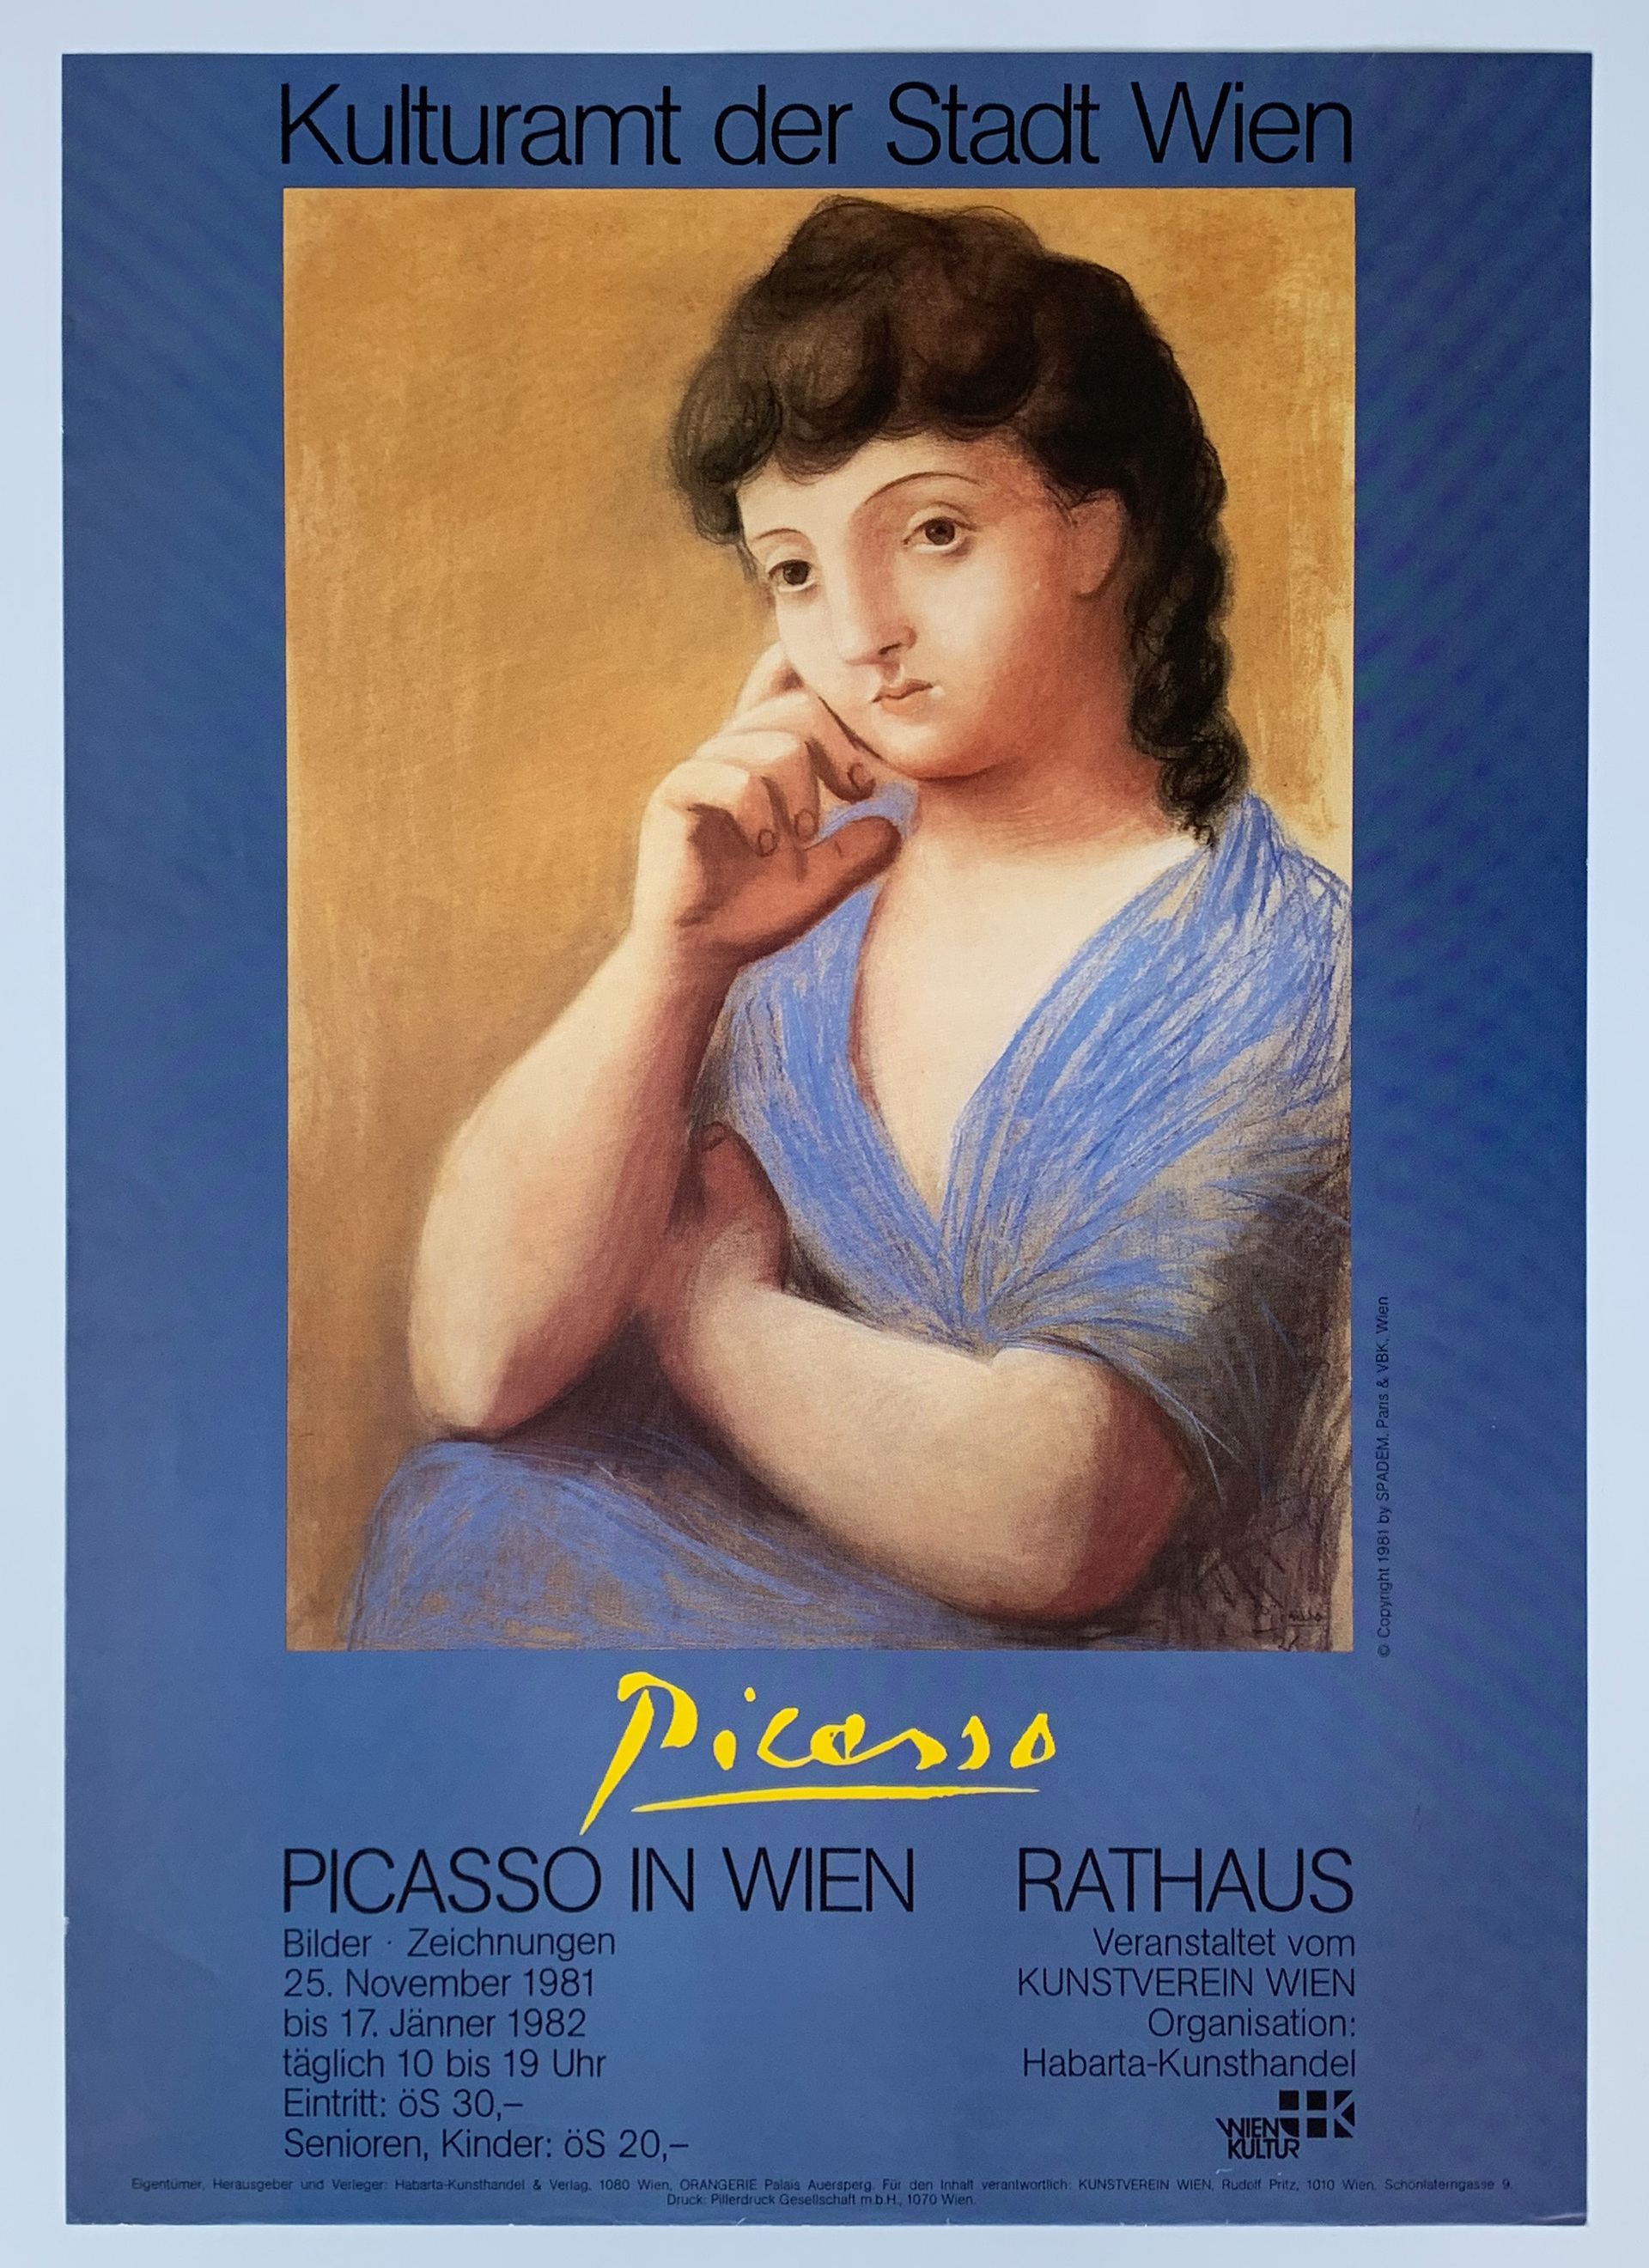 Picasso in Wien Rathaus - Rodrigo 397